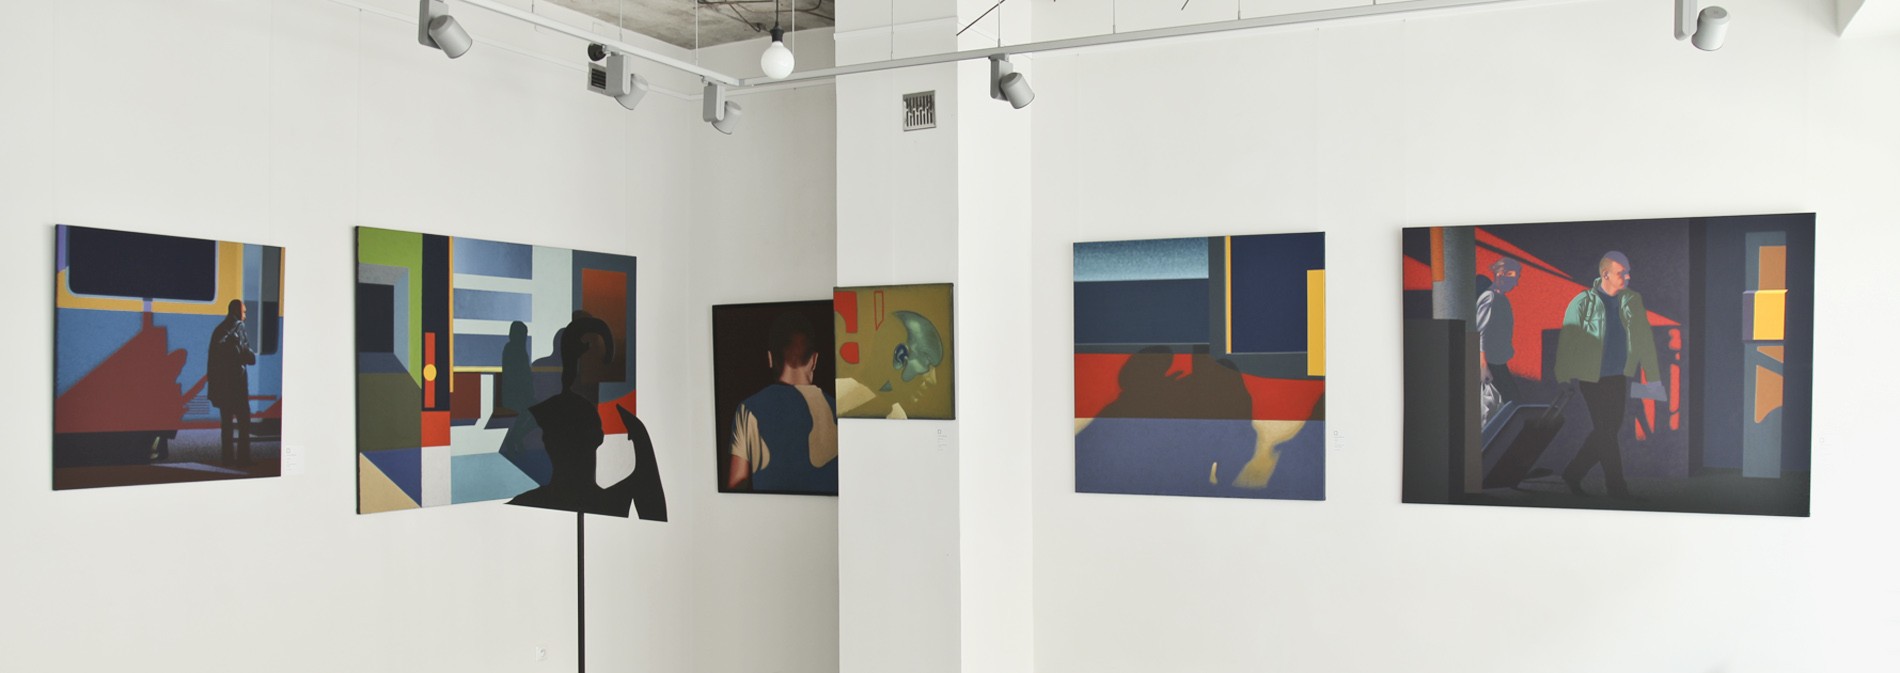 Wystawa Dariusza Milczarka "Stany przejściowe" w Galerii Stalowa w Warszawie